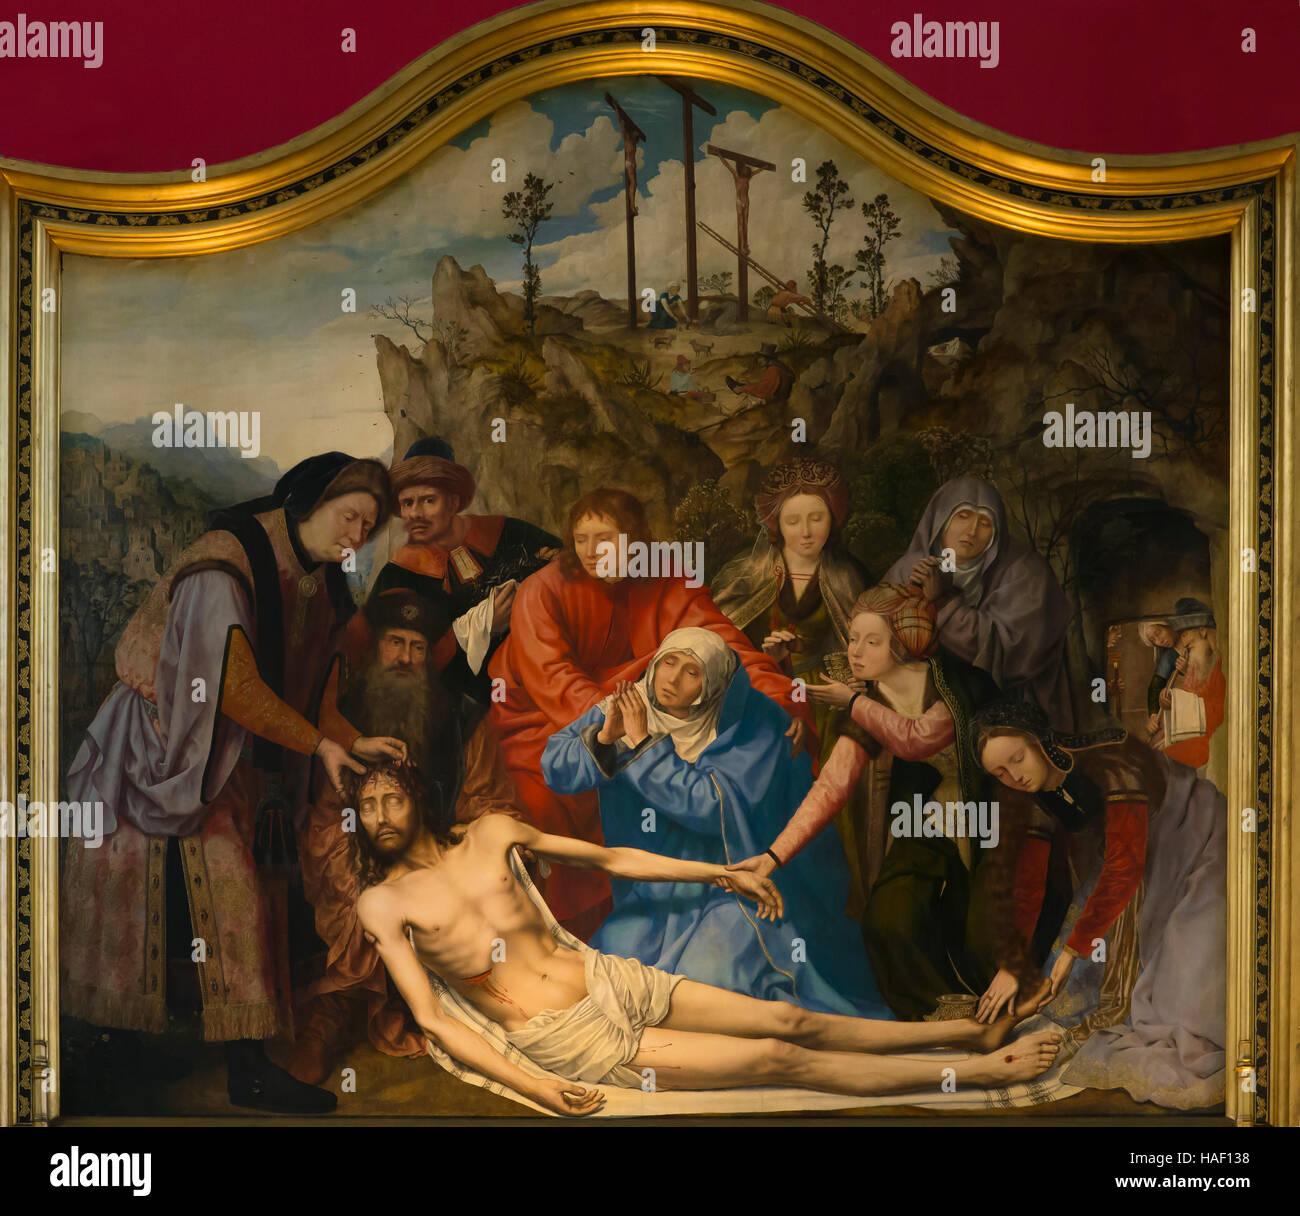 Lamento di Quentin Matsys, 1509-1511, il Museo Reale di Belle Arti, Anversa, Belgio, Europa Foto Stock